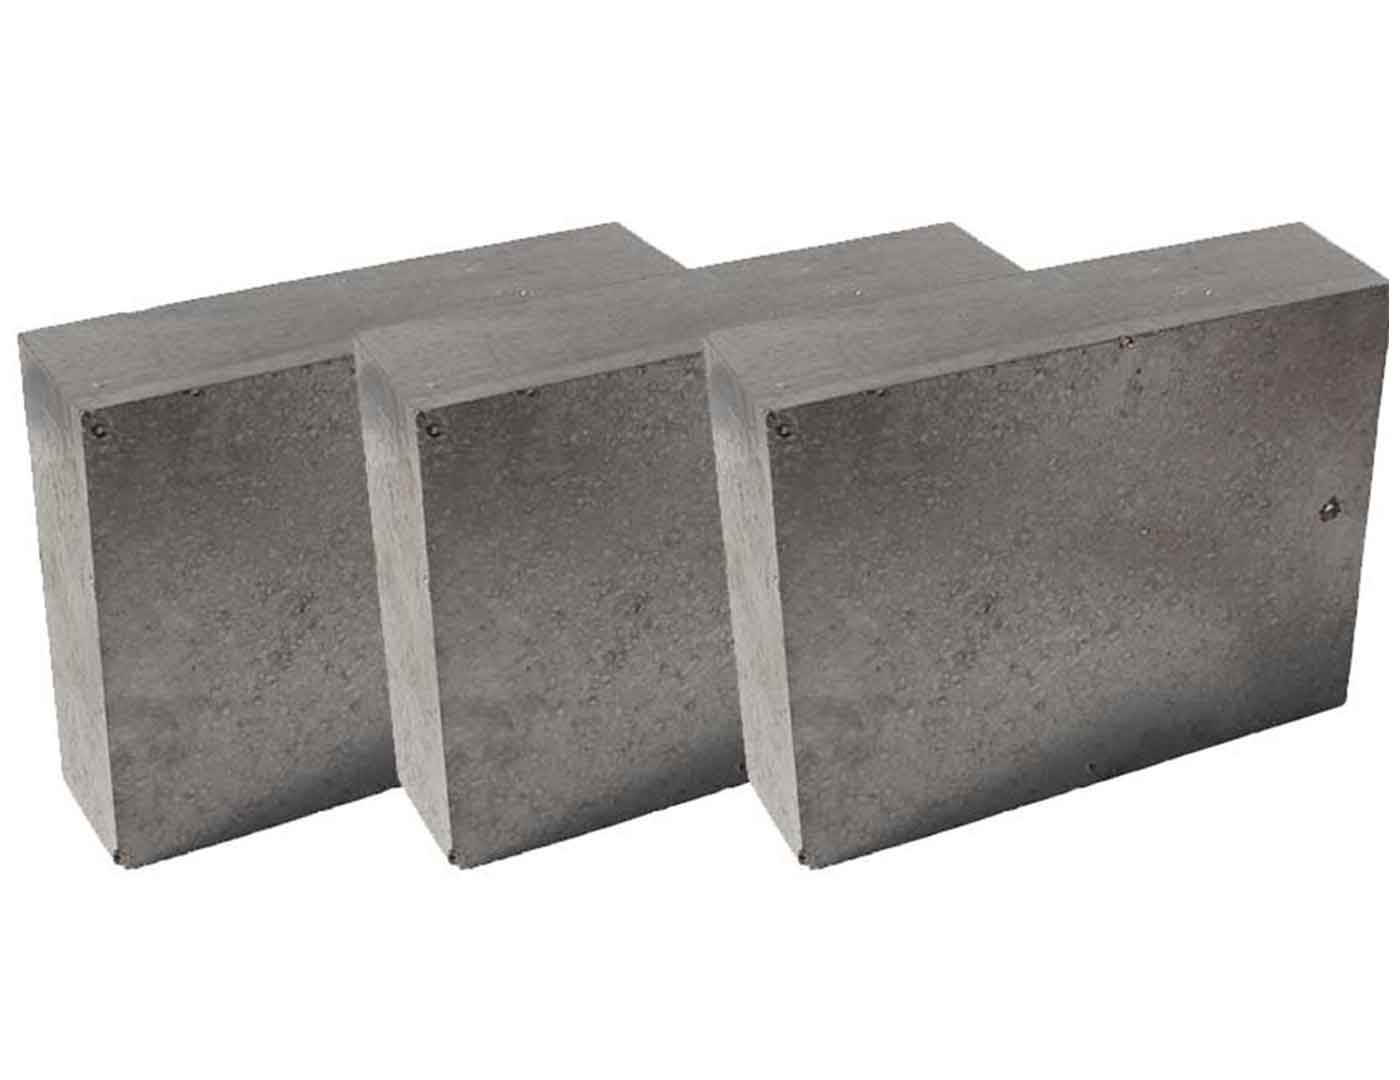 Alumina Carbon Bricks